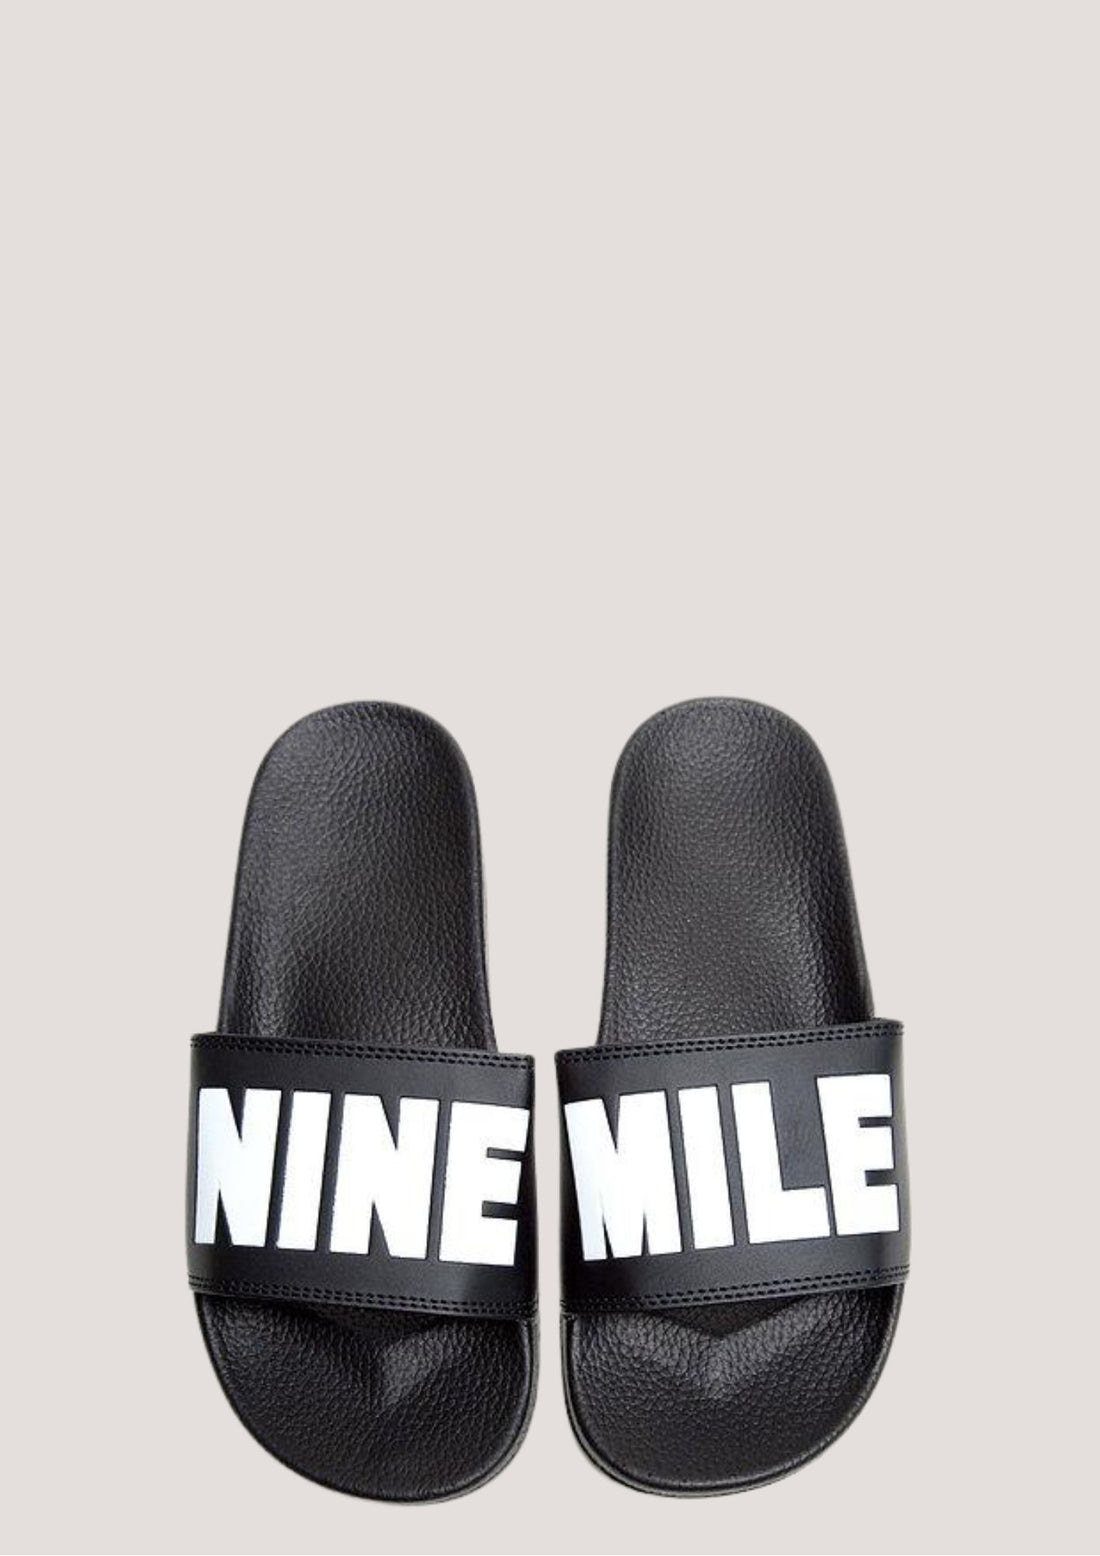 Classic Nine Mile Jamaica Sliders - Nine Mile Clothing 